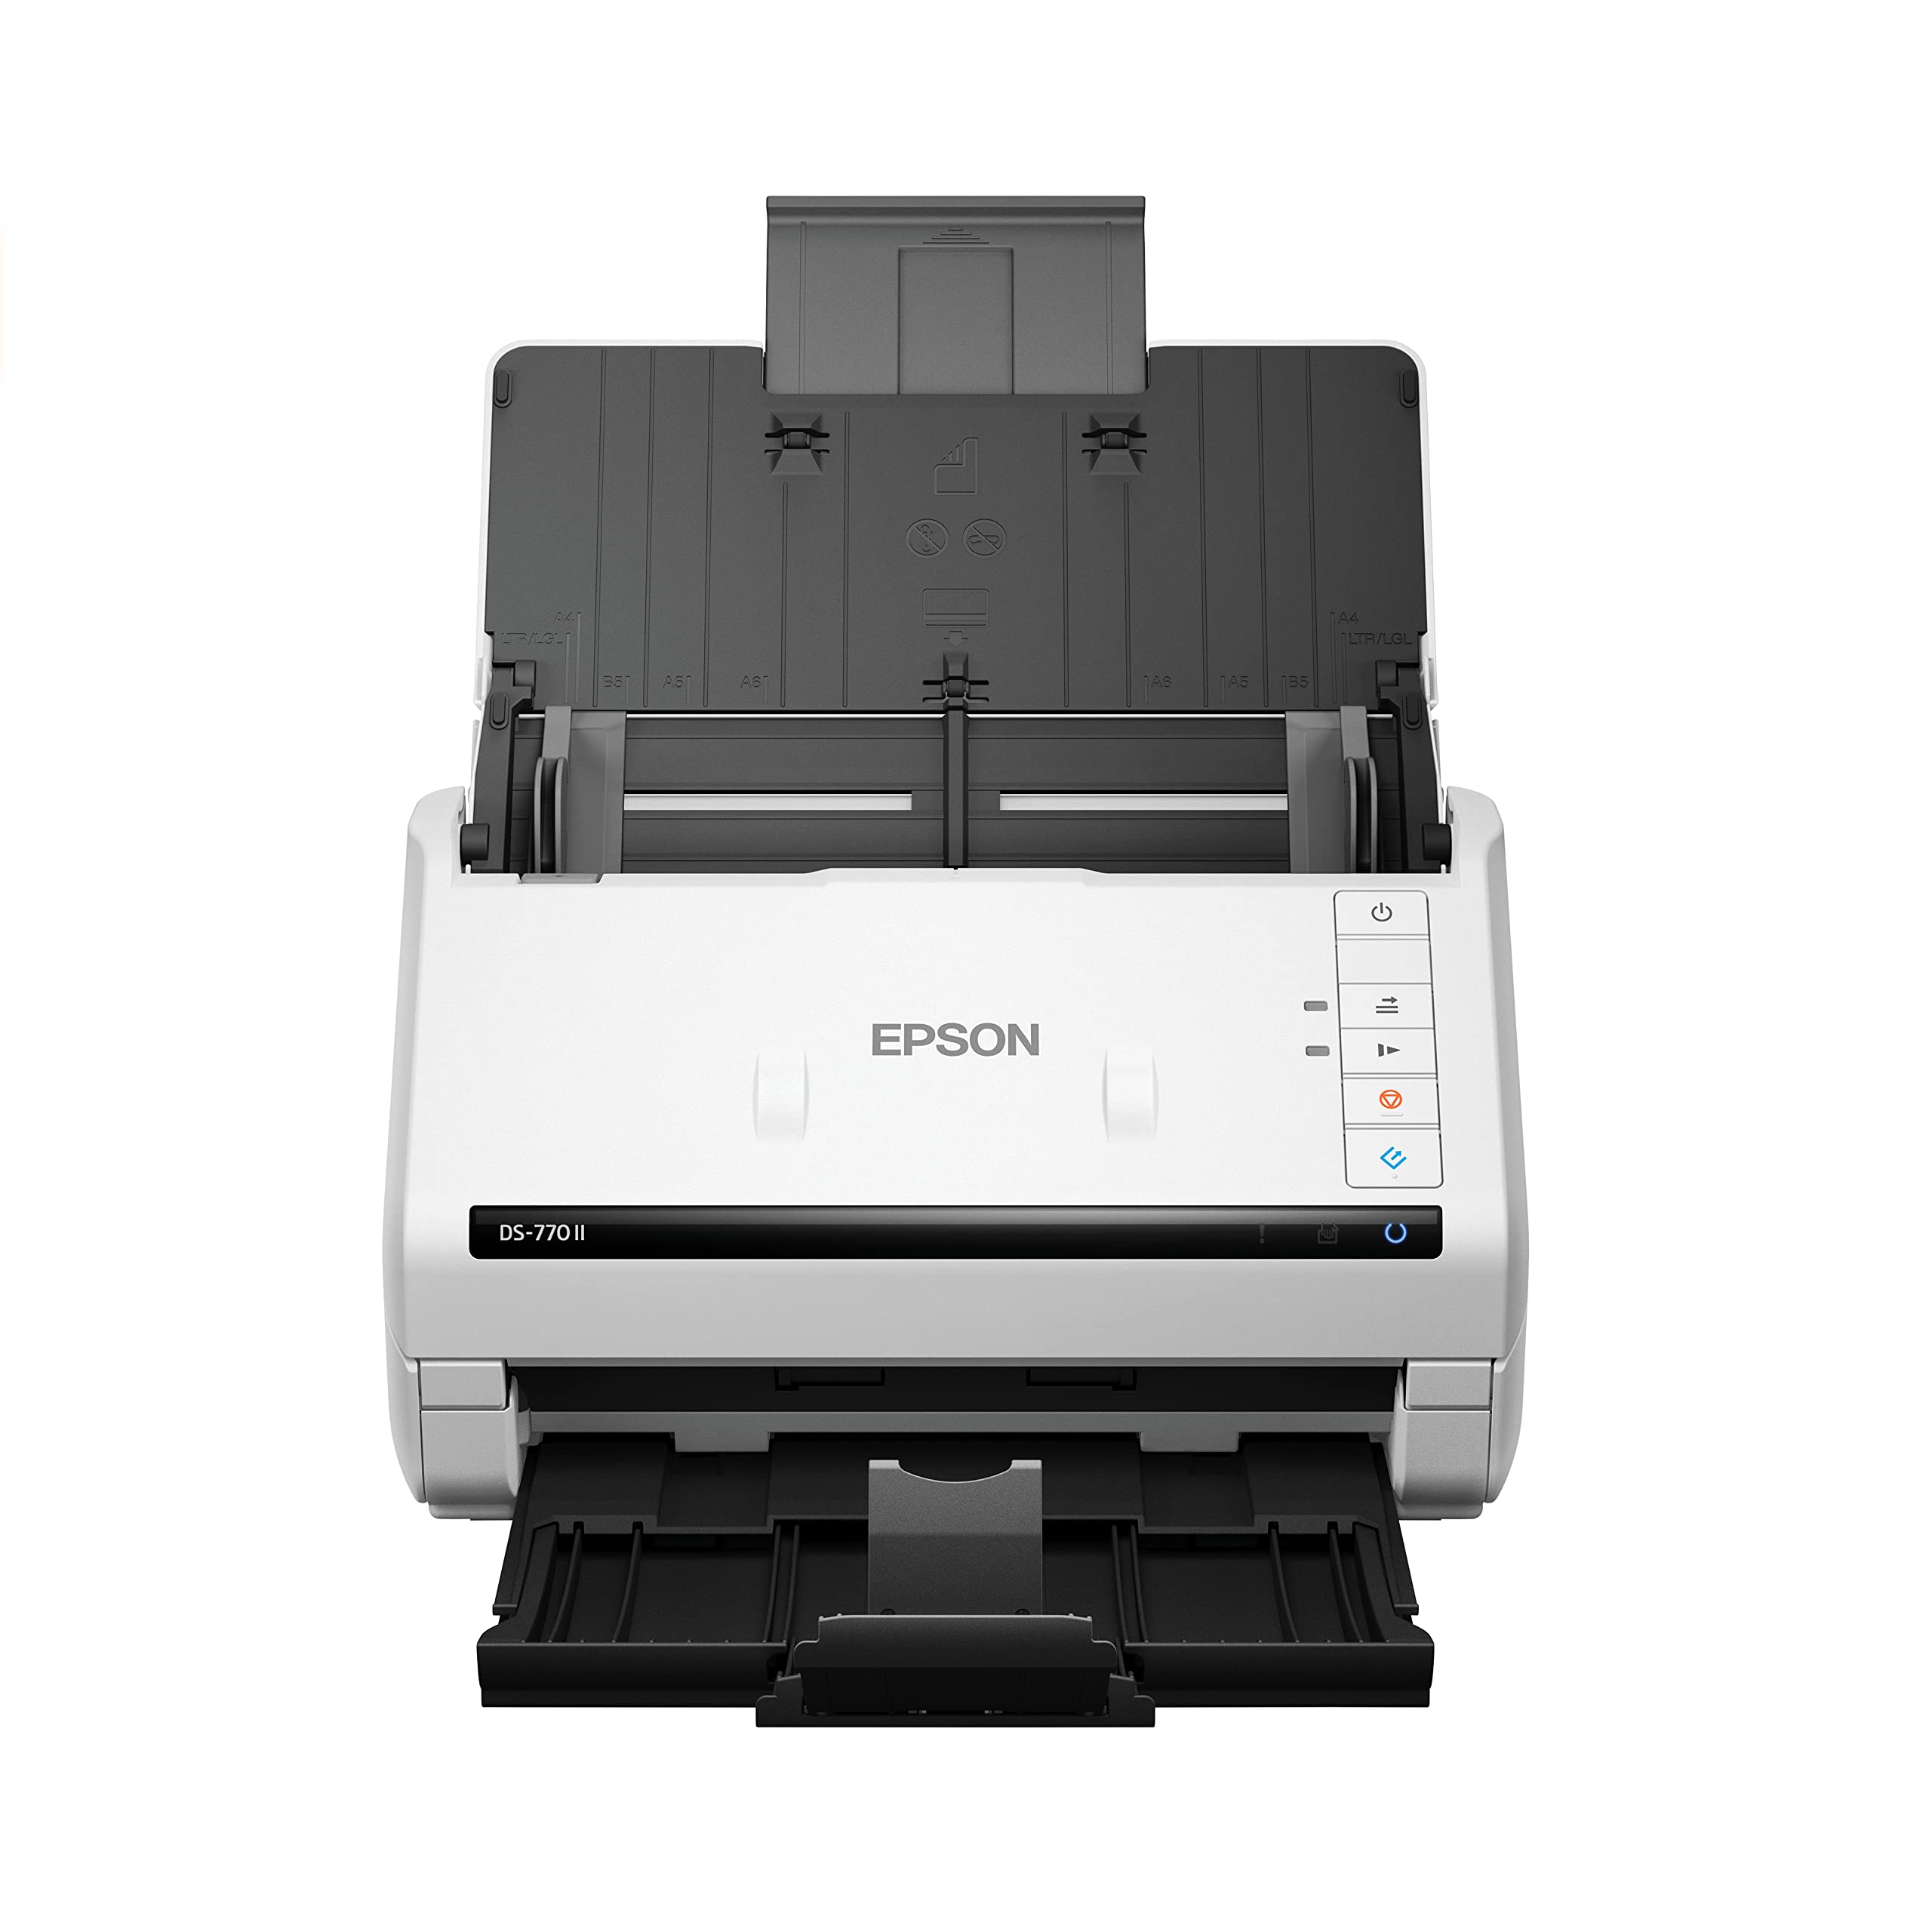 Epson DS-770 II カラー両面ドキュメント スキャナ (PC および Mac 用)、100 ページ...